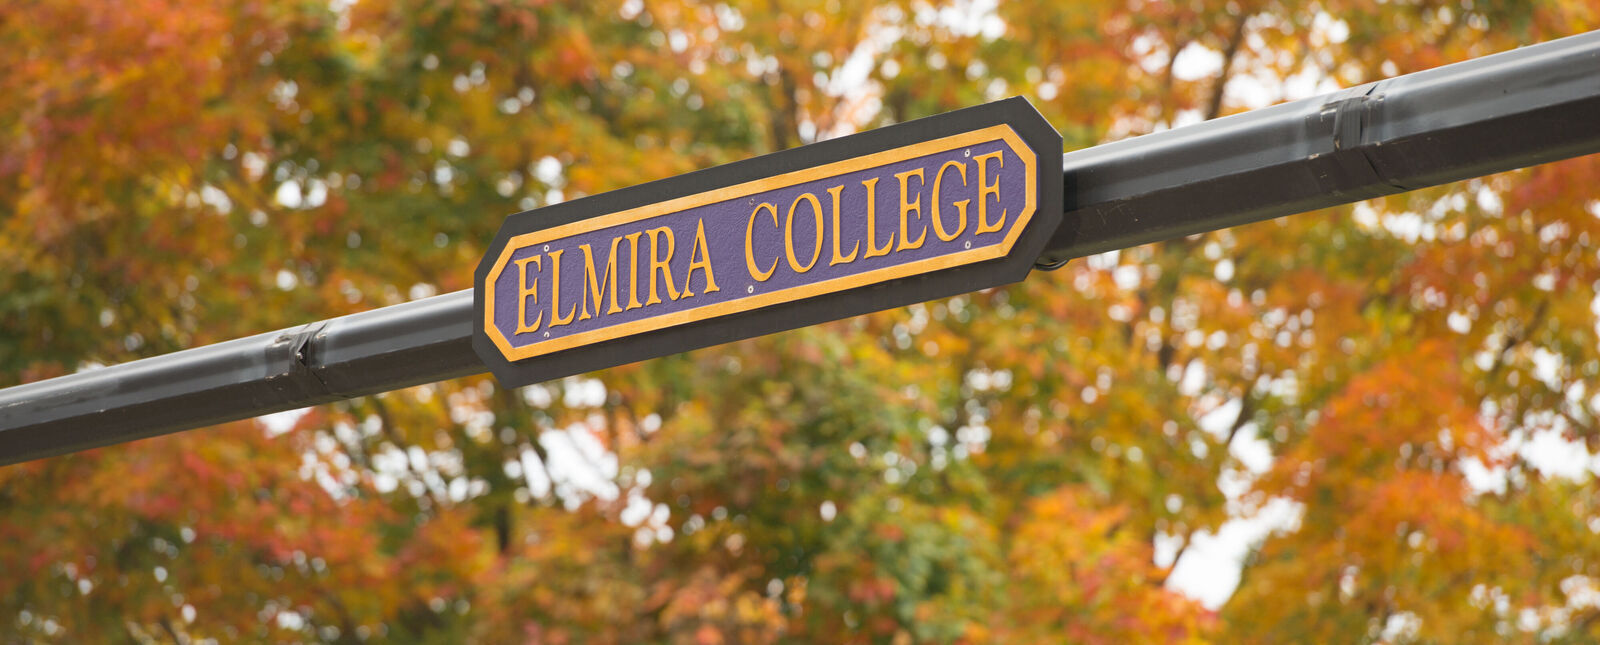 An Elmira College street sign